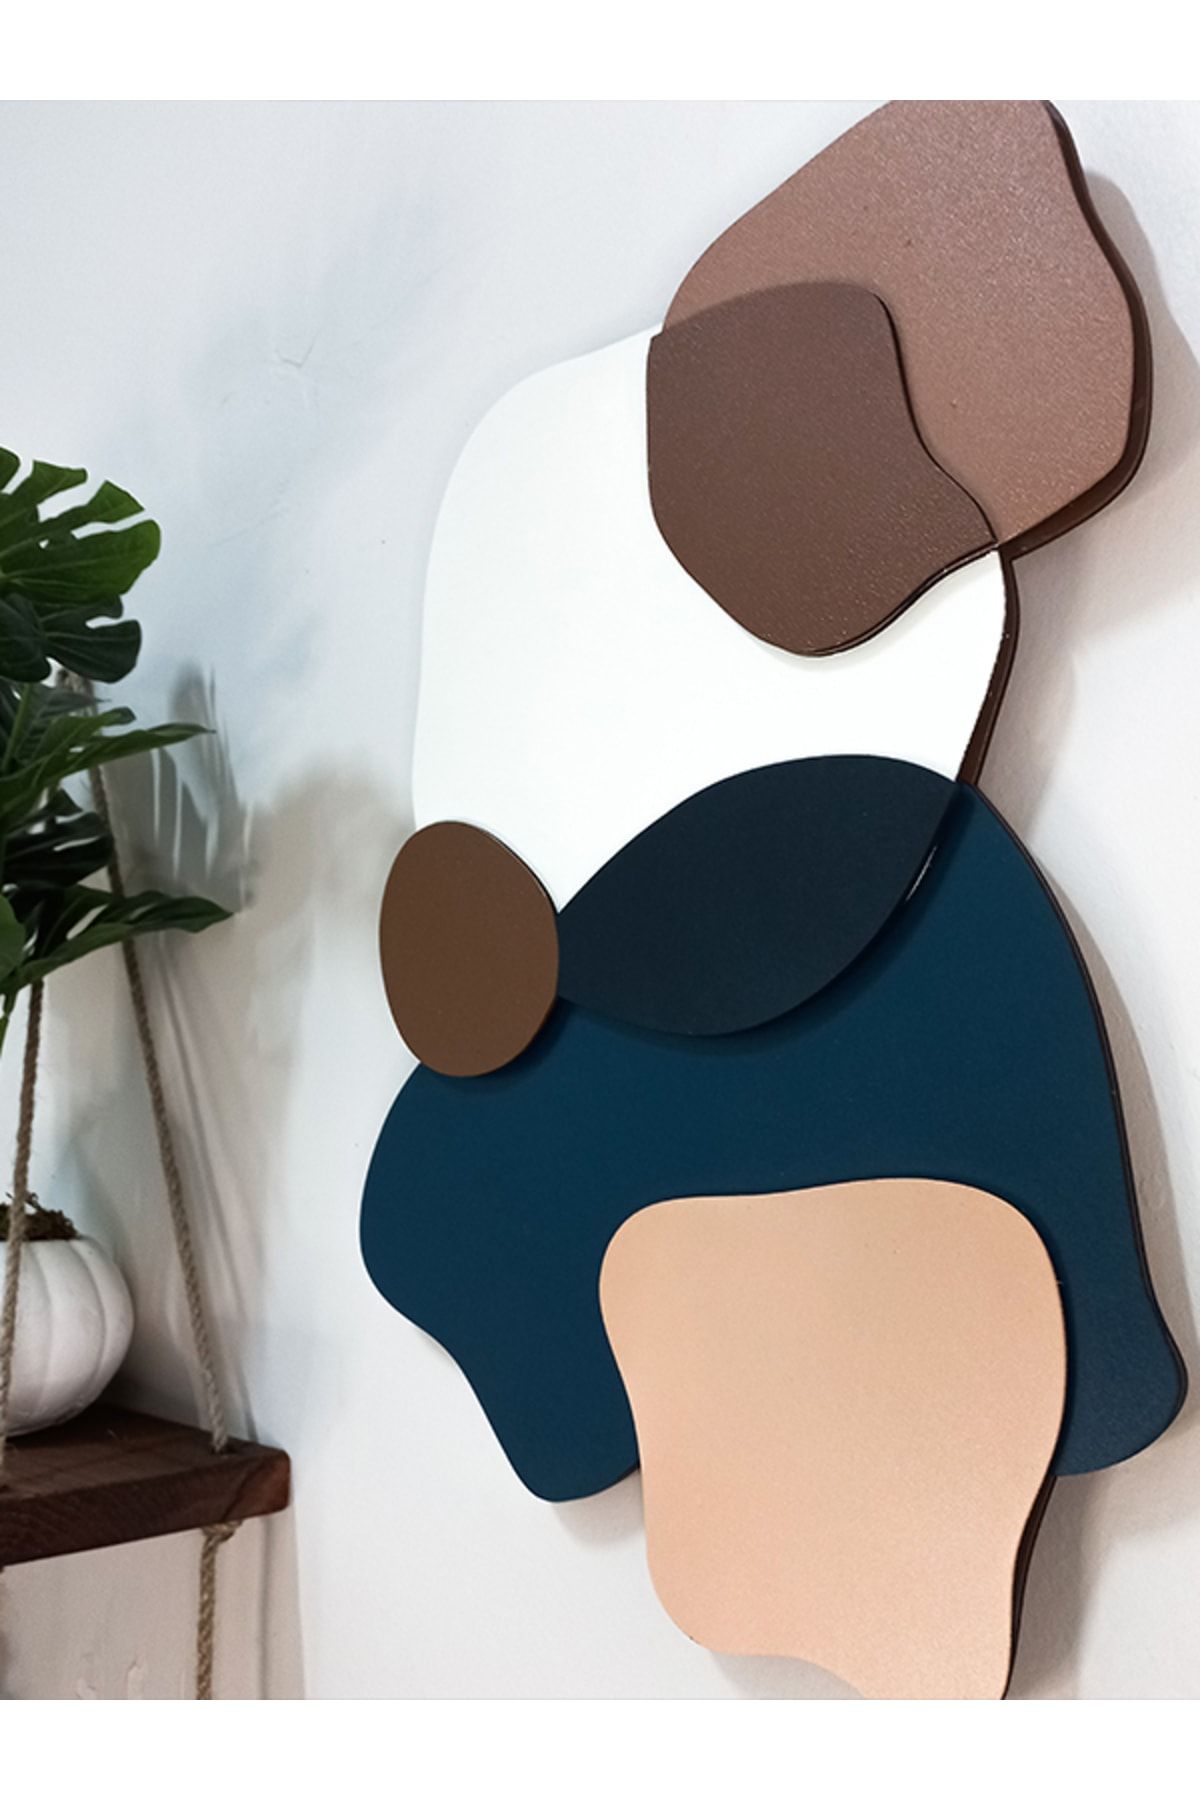 KARO TASARIM -10 Katmanlı Soft Renkli Ahşap Tablo Duvar Aksesuarları Dekoratif Ürünler